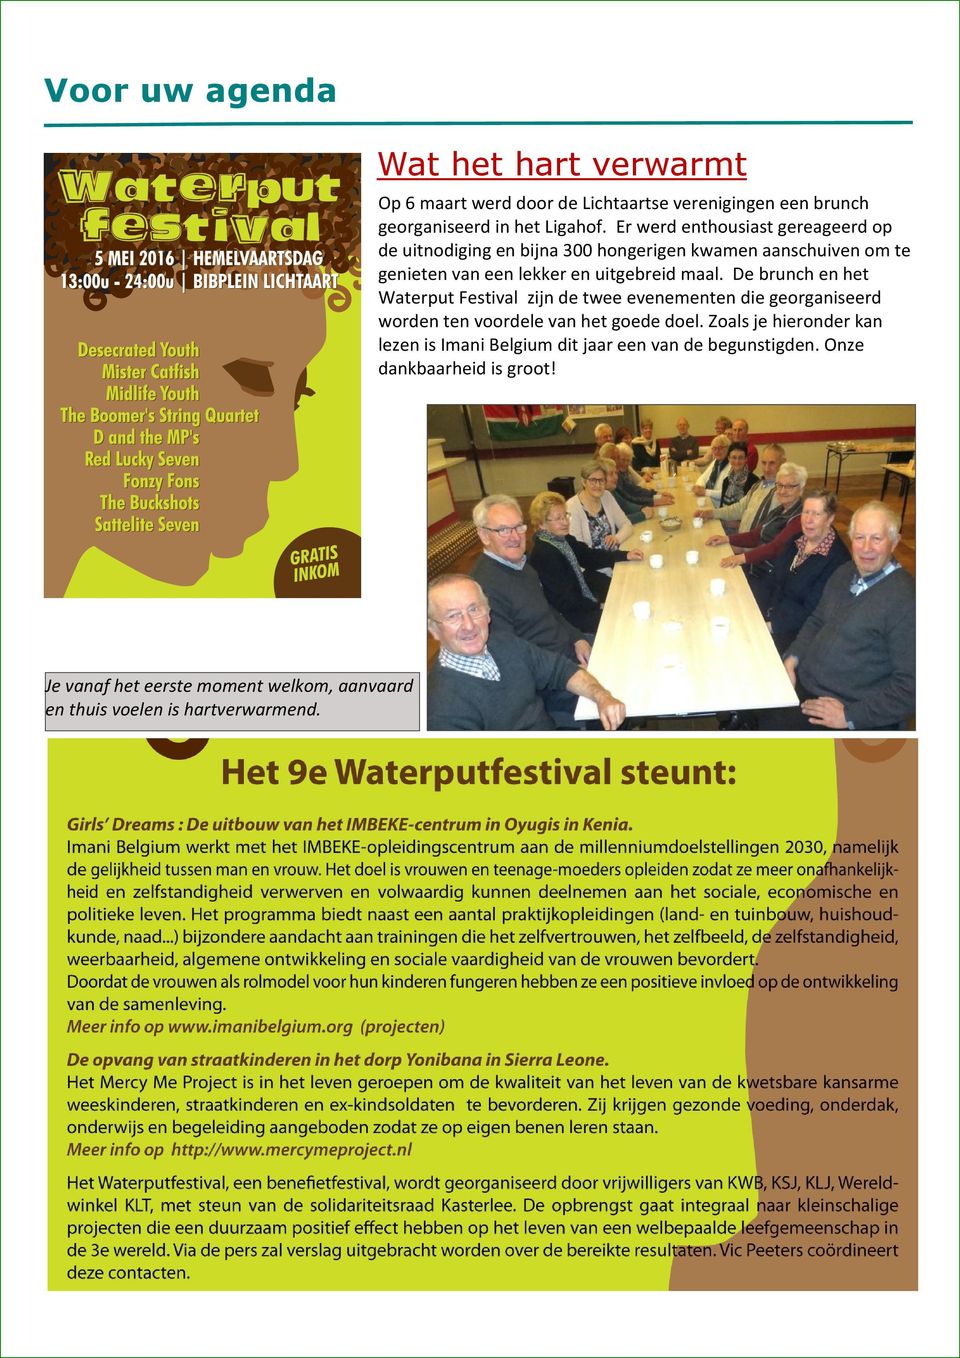 De brunch en het Waterput Festival zijn de twee evenementen die georganiseerd worden ten voordele van het goede doel.